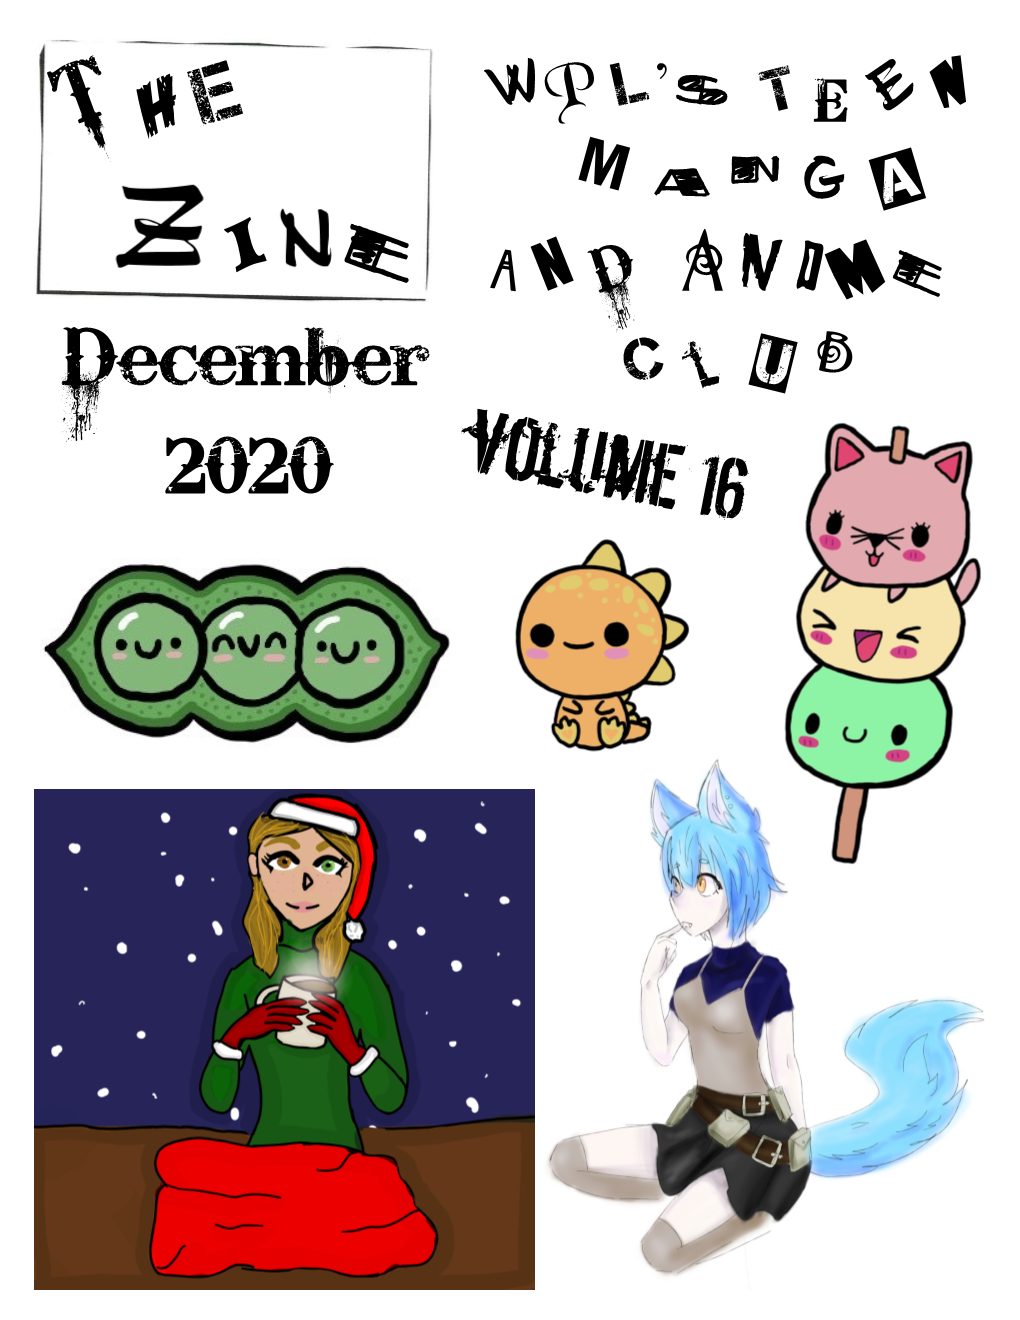 A December 2020